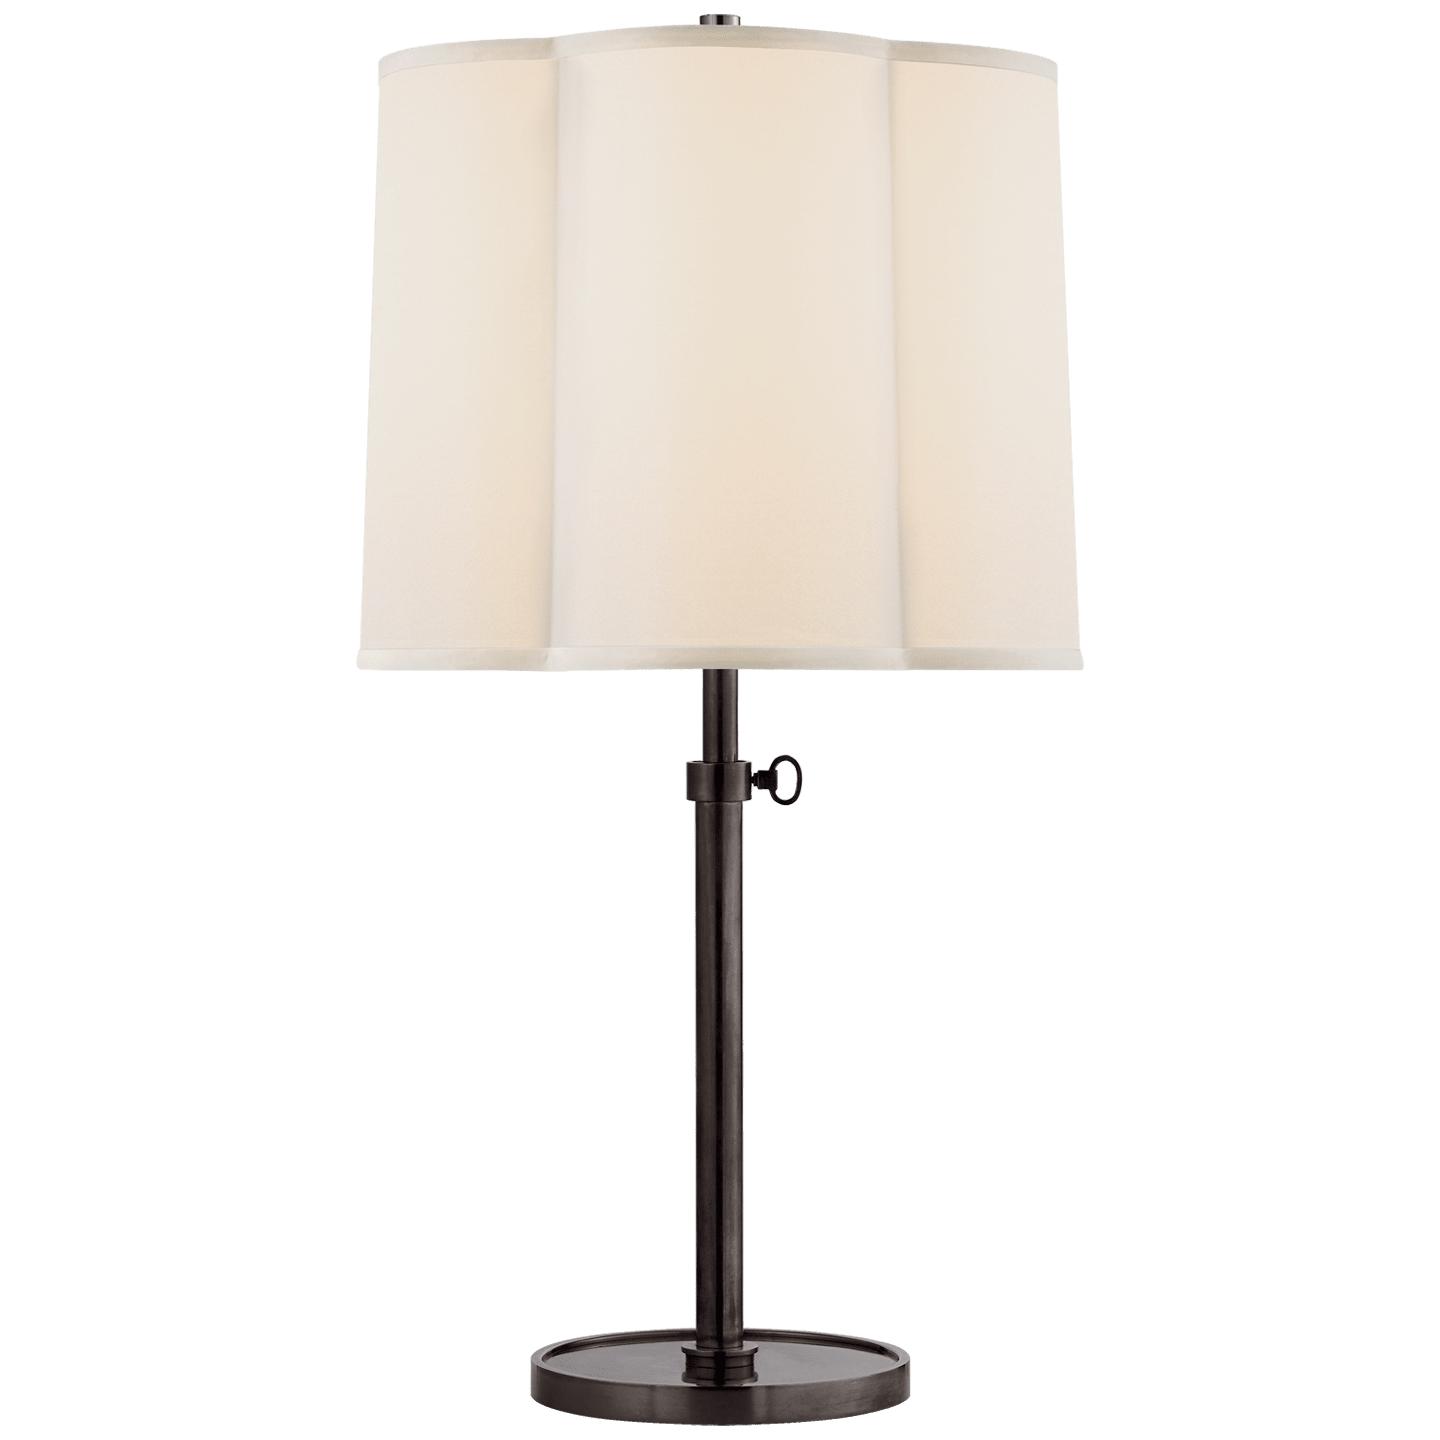 Купить Настольная лампа Simple Adjustable Table Lamp в интернет-магазине roooms.ru